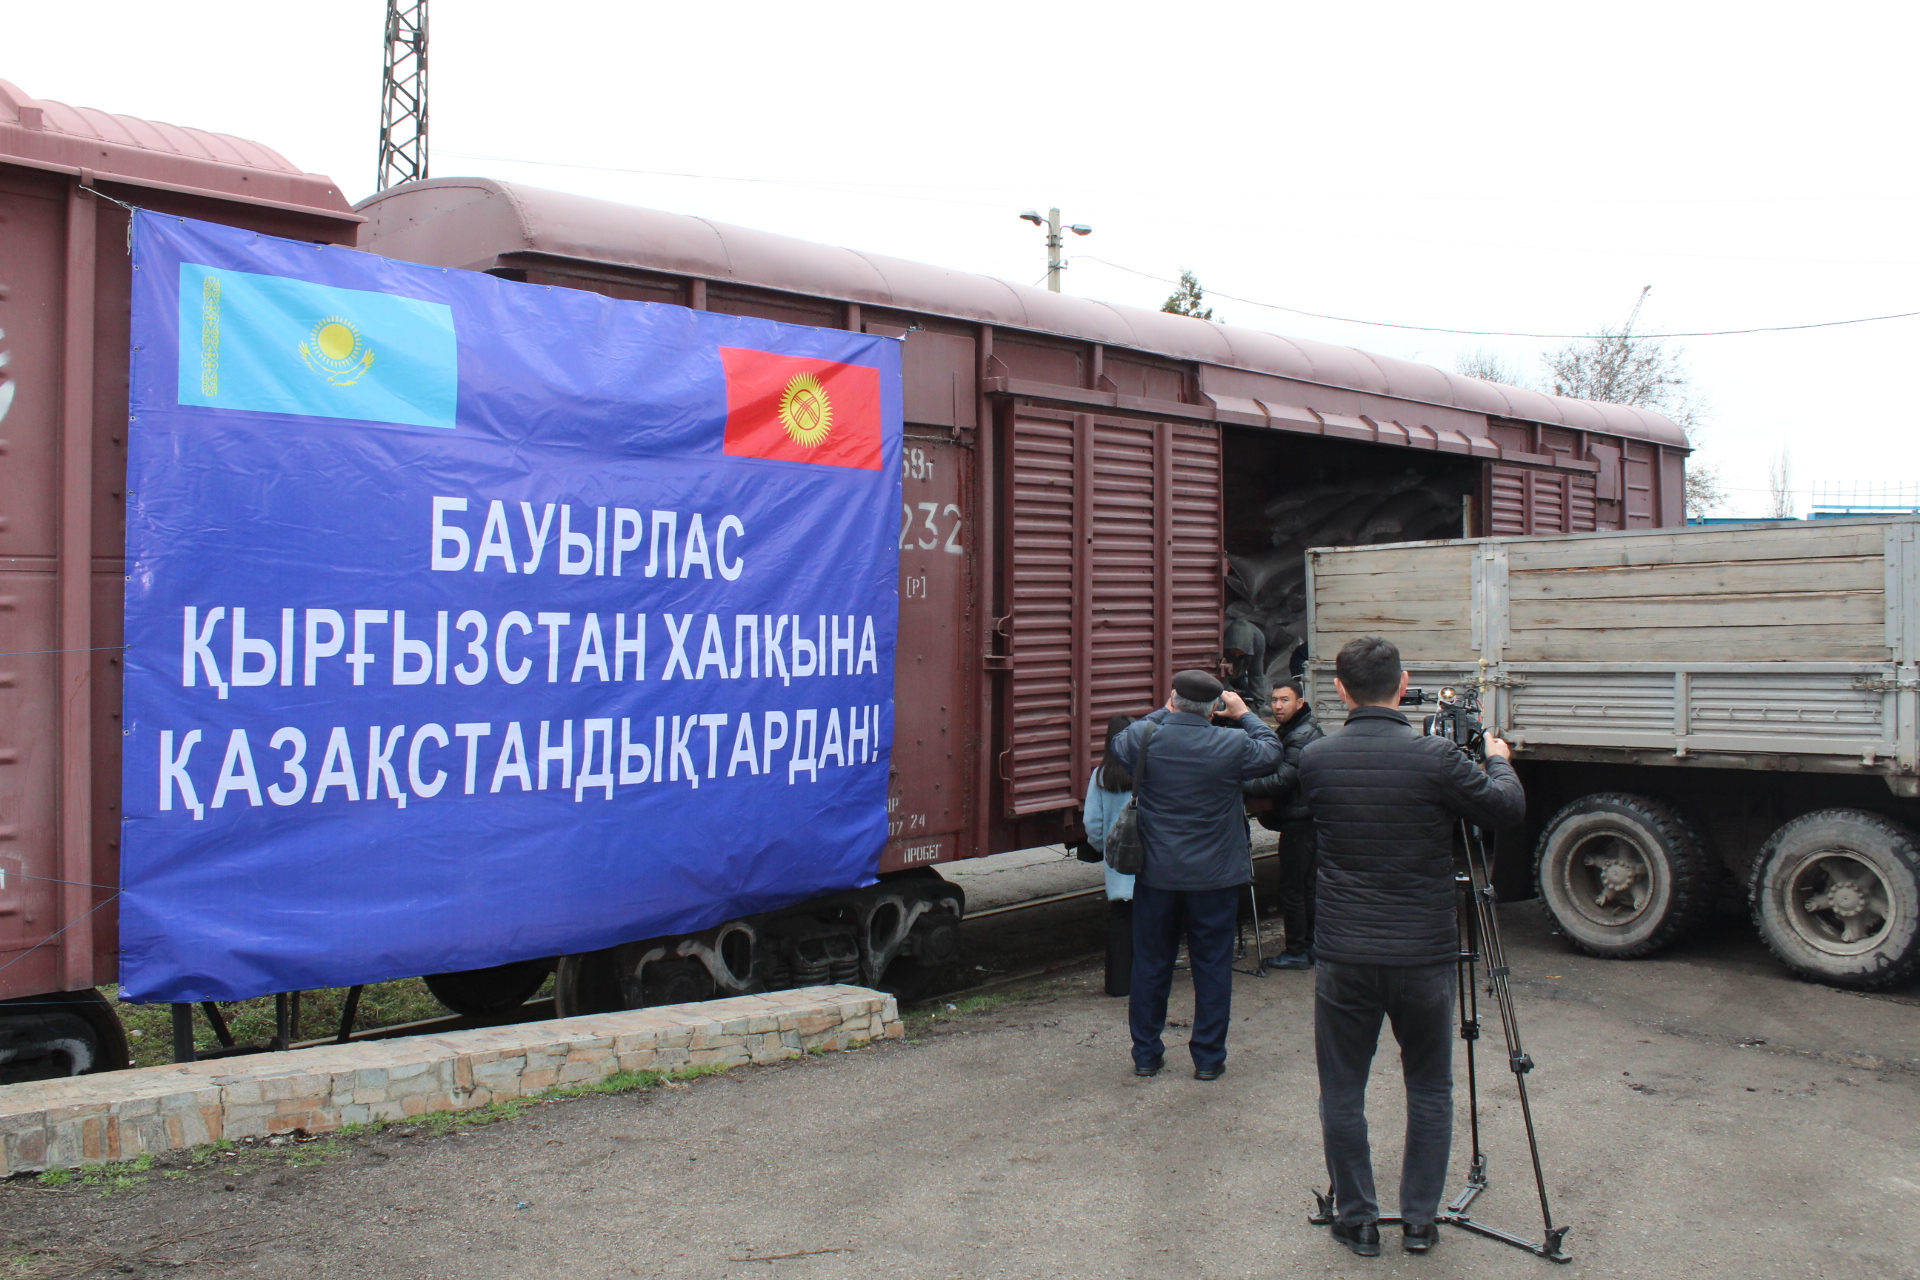 1000 тонн семян отборной казахстанской пшеницы передано Кыргызстану в качестве гуманитарной помощи